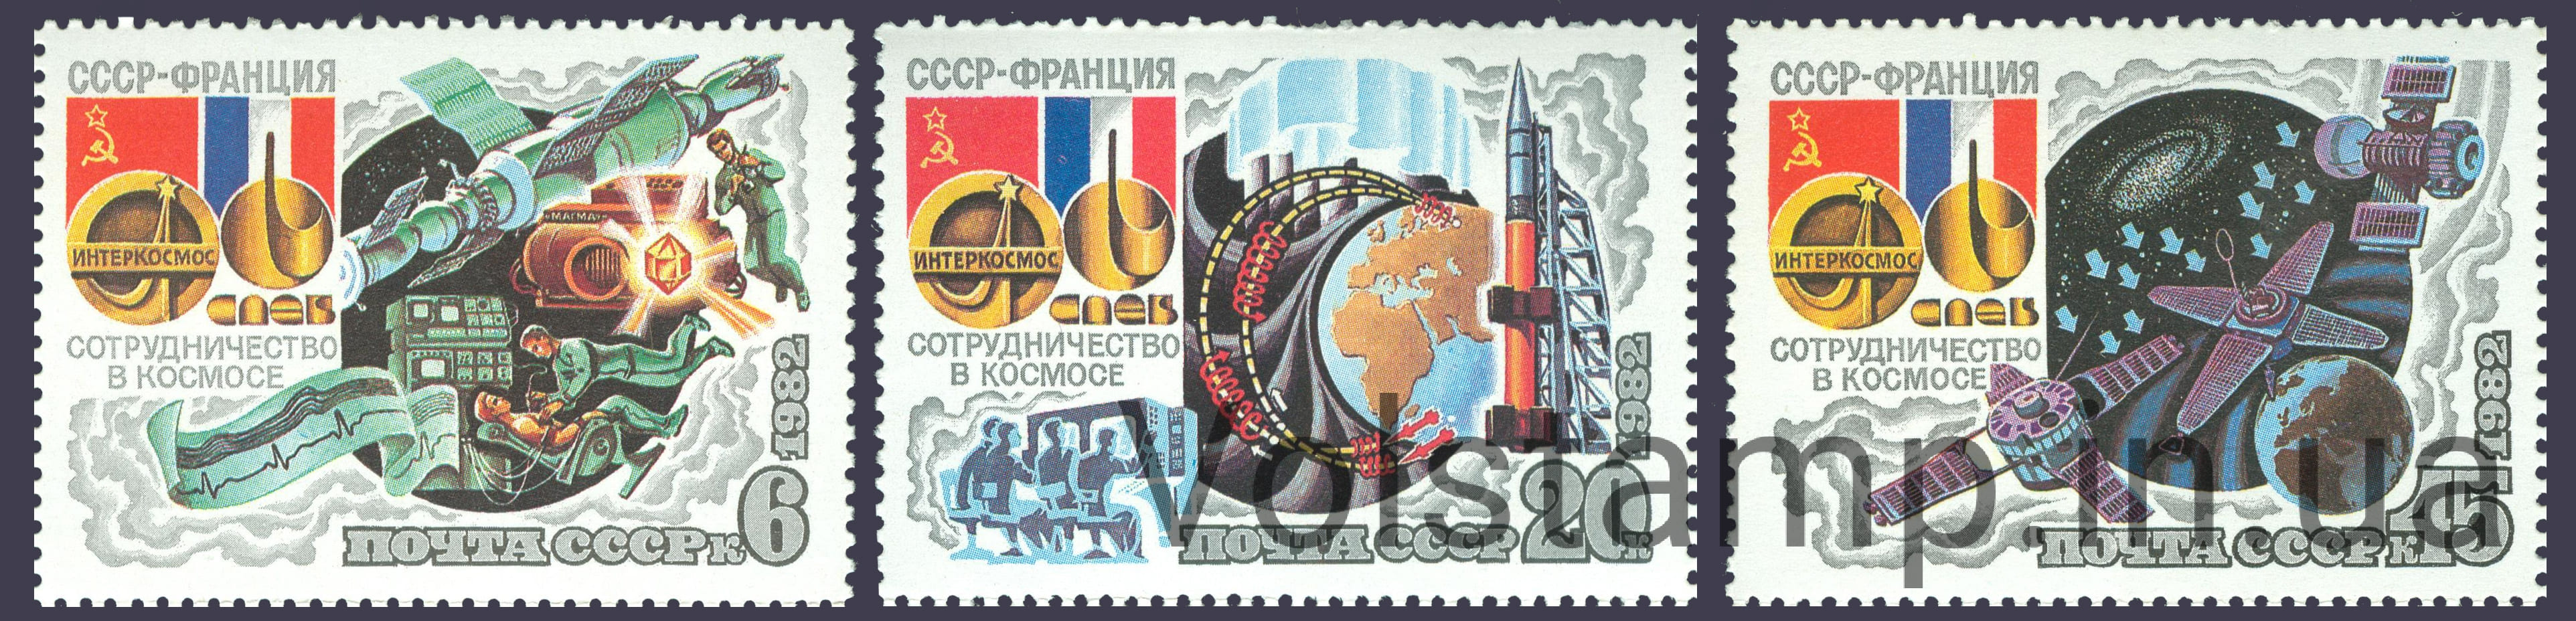 1982 серия марок Совместный советско-французский полет на корабле Союз-Т6 №5240-5242